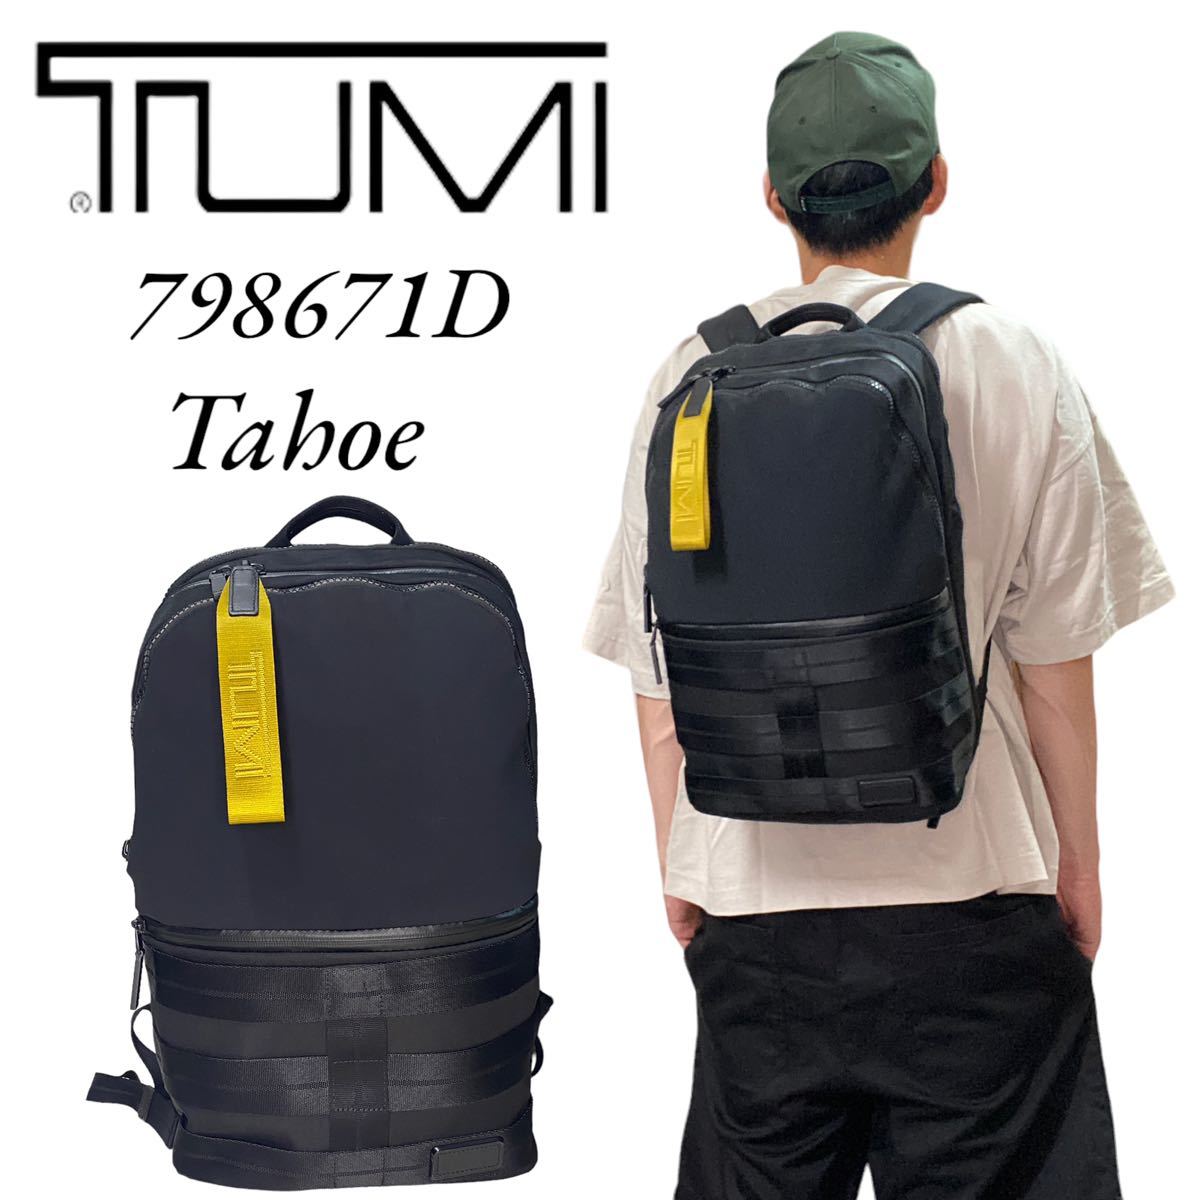 美品】TUMI Tahoe 798671d バックパック クレストヴュー(リュック